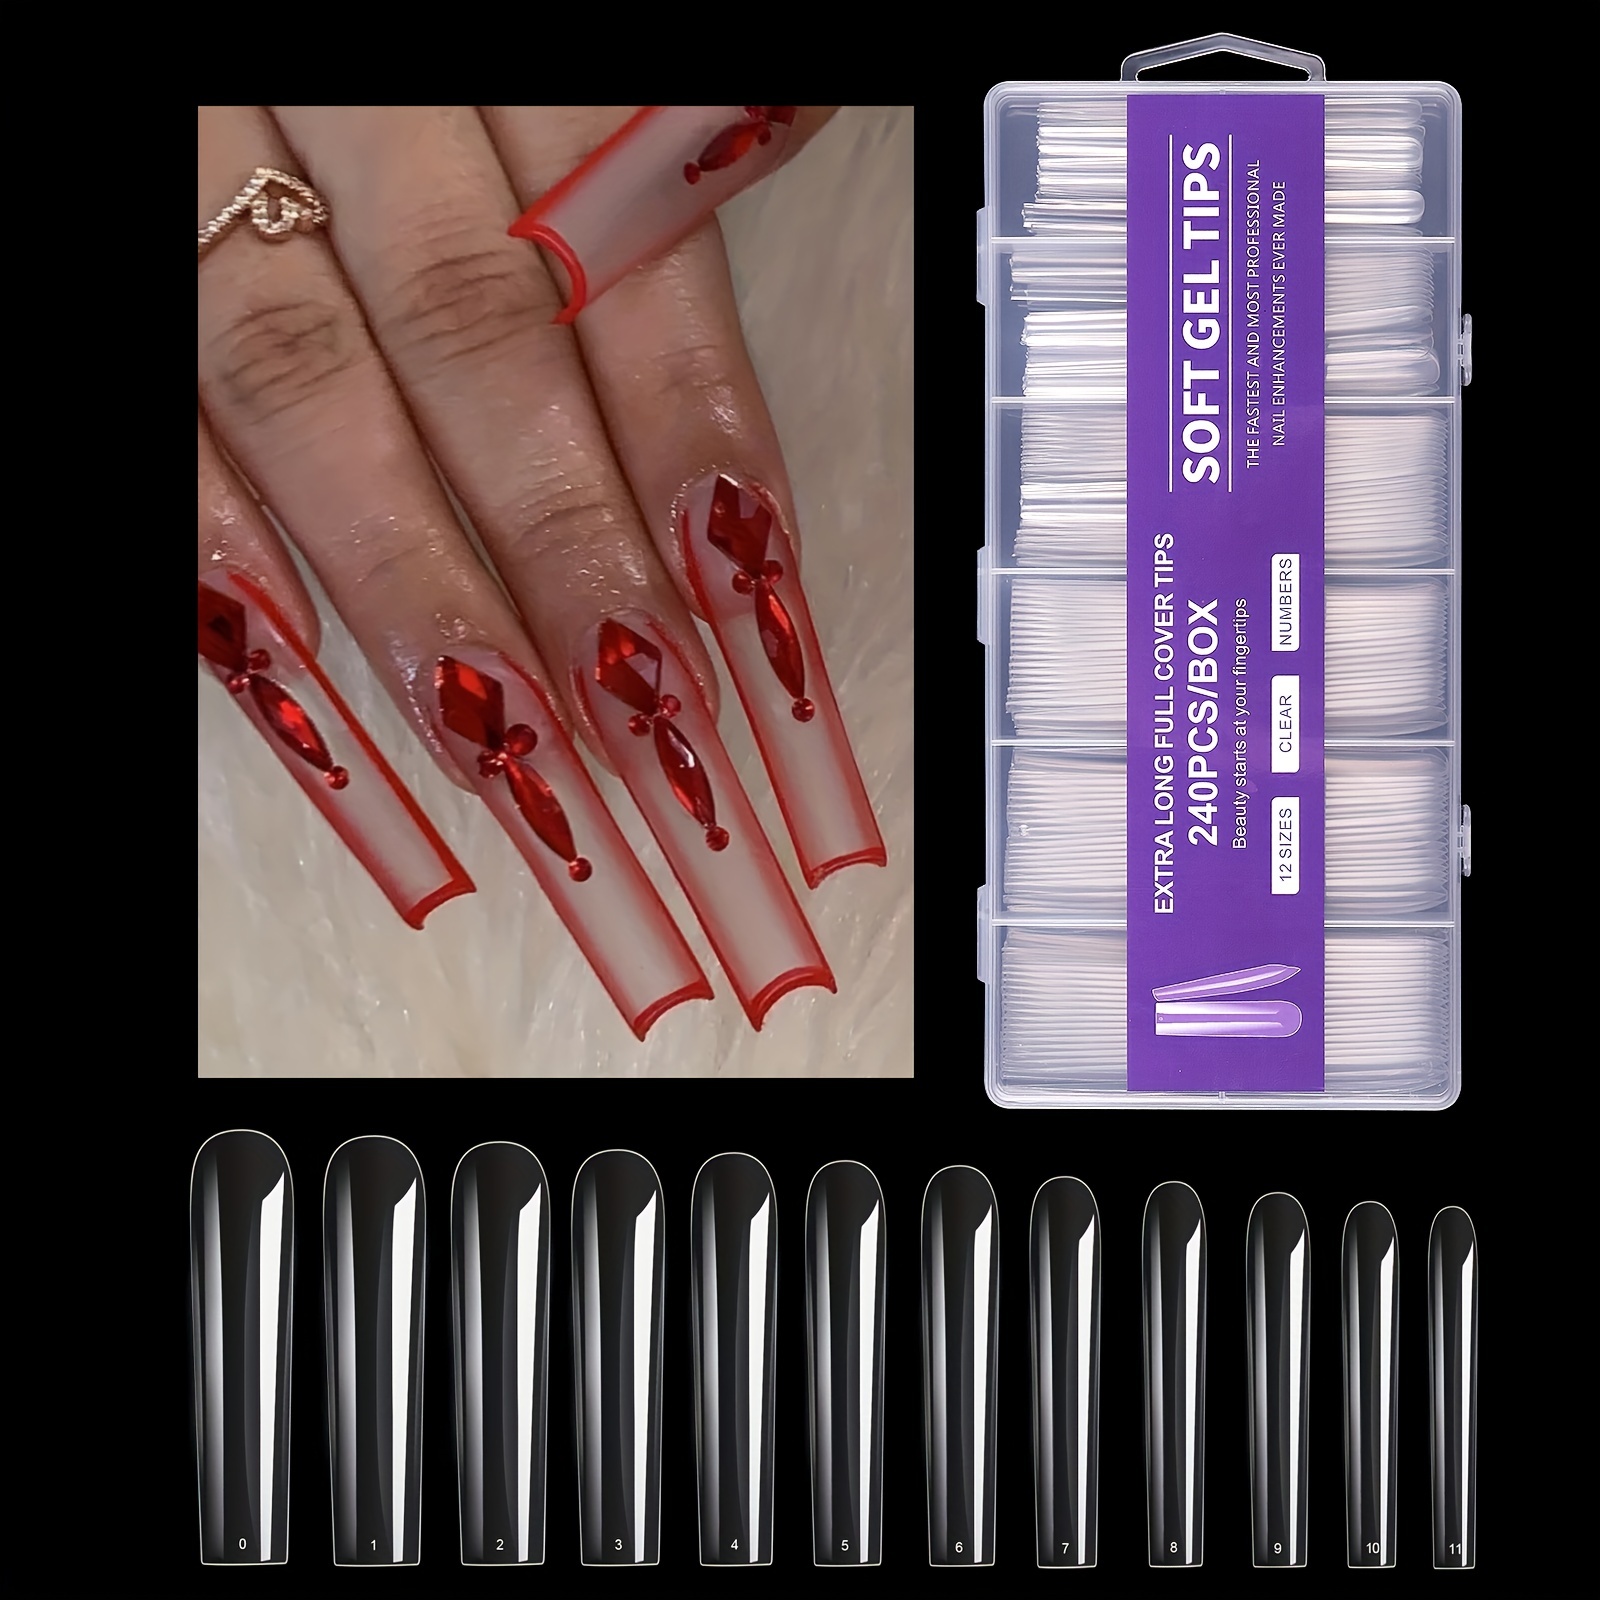 False Nails Press On Nail Storage Box 3x3inch Acrylic Nail Packing Box For  Home Use Nail Salon Nail Display Case 230927 From Bao04, $10.19